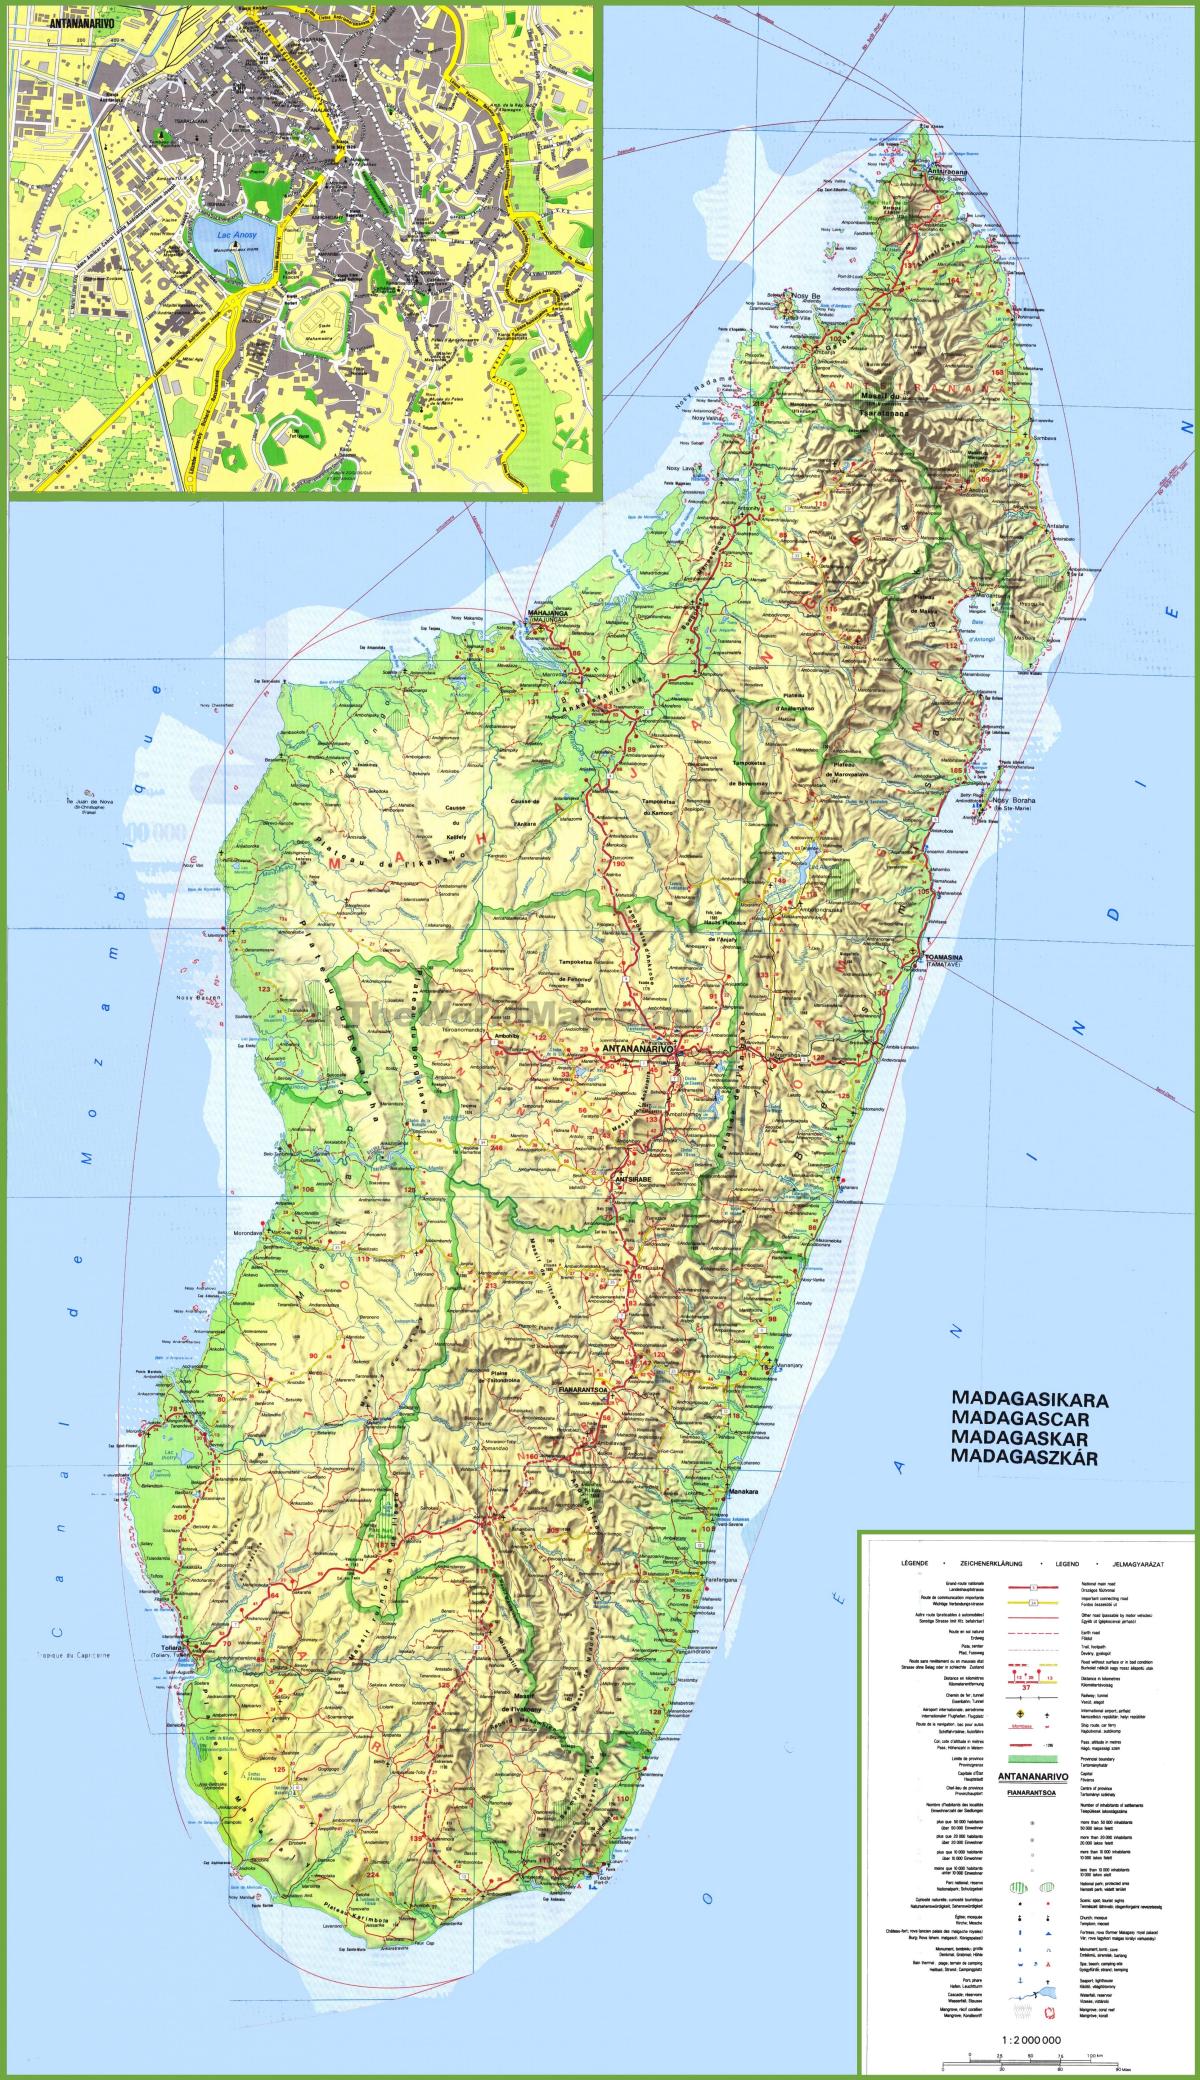 térkép, amely Madagaszkár